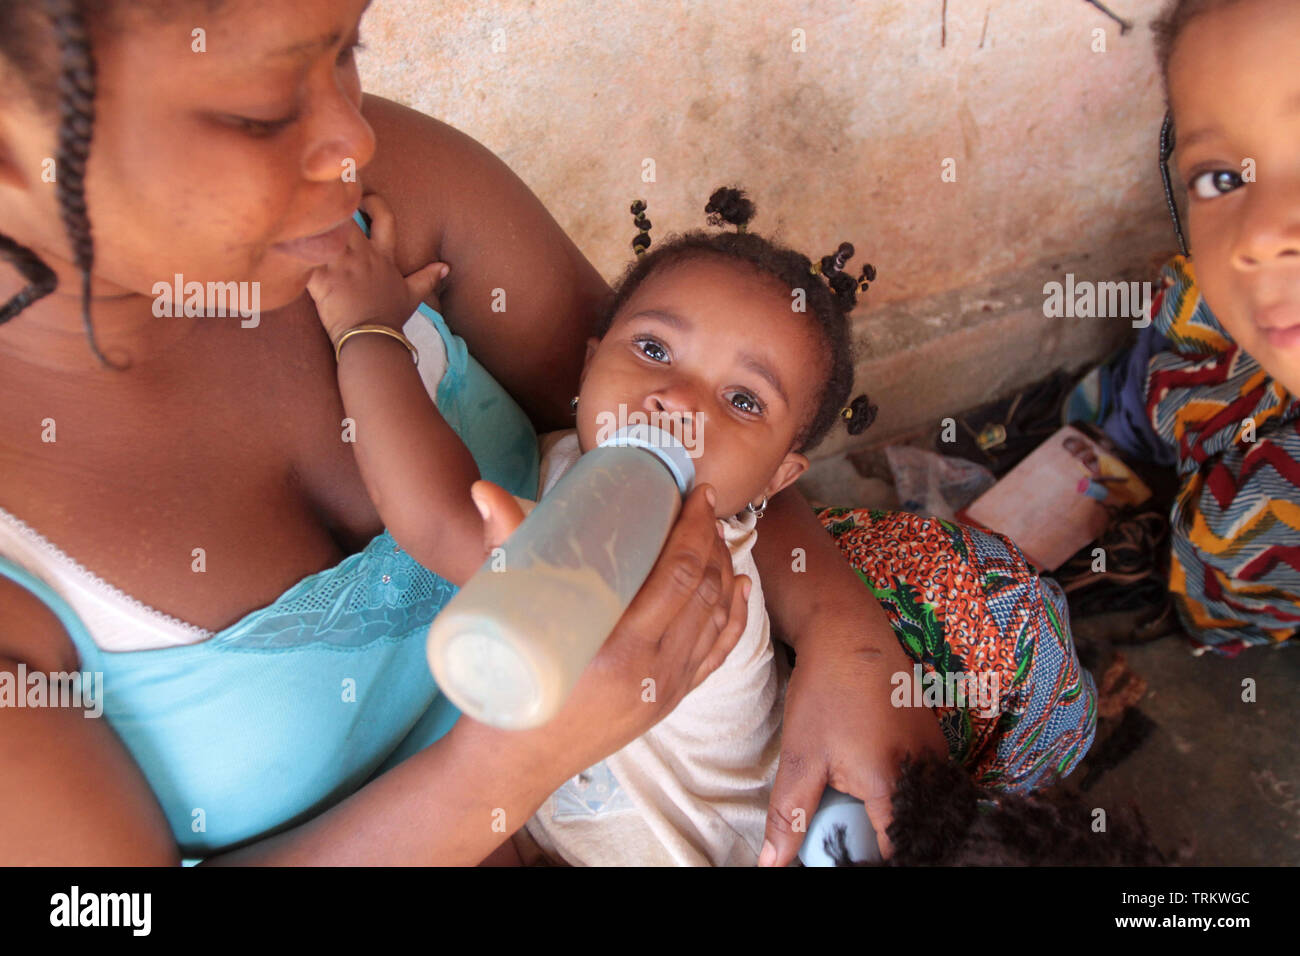 Maman togolaise donnant le biberon à son enfant. Lomé. Togo. Afrique de l'Ouest. Stock Photo